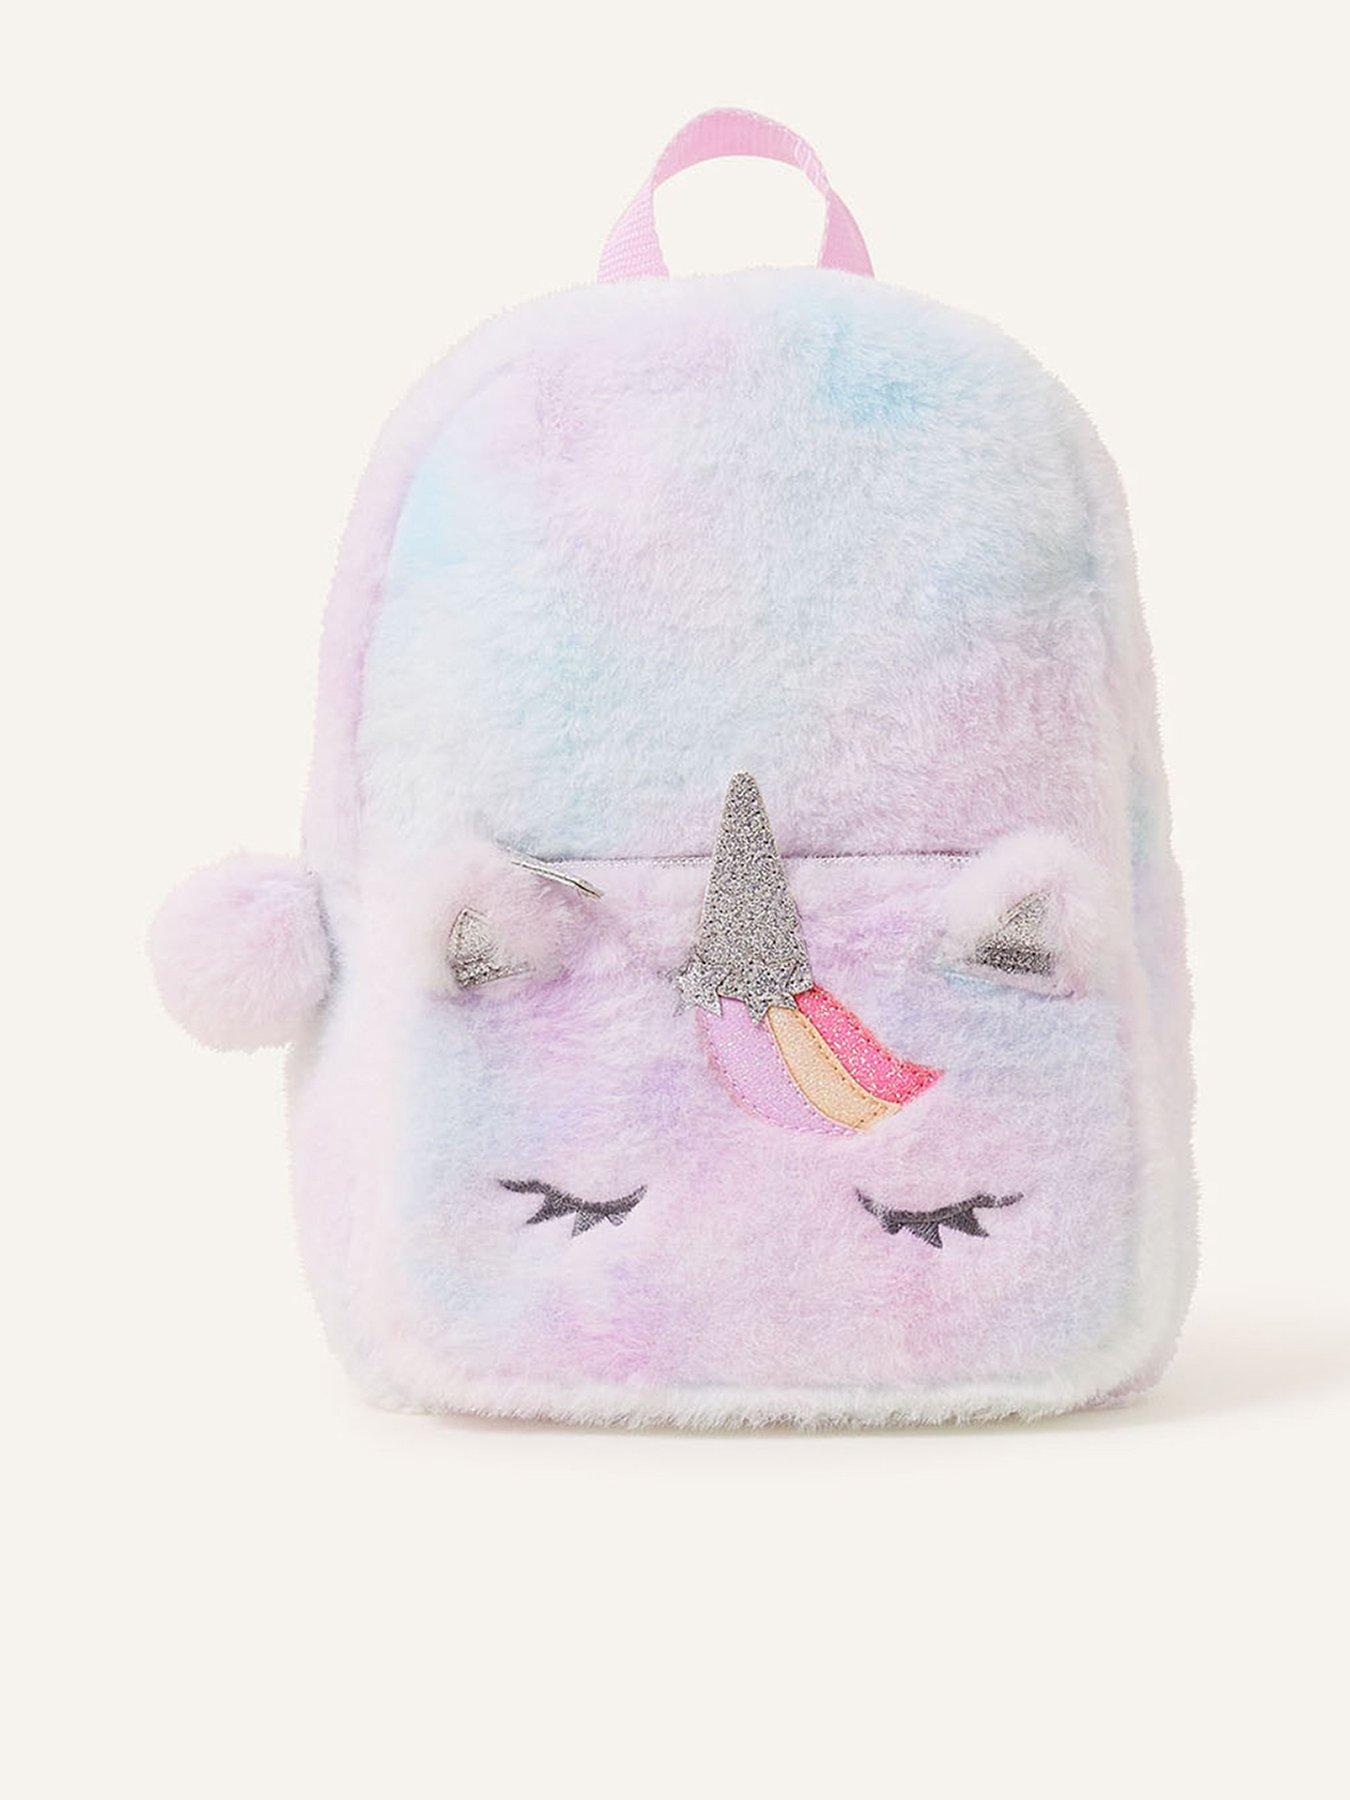 Magical Unicorn Gift Set with 15 Plush Stuffed Unicorn, Pink Sunglasses, Unicorn Purse